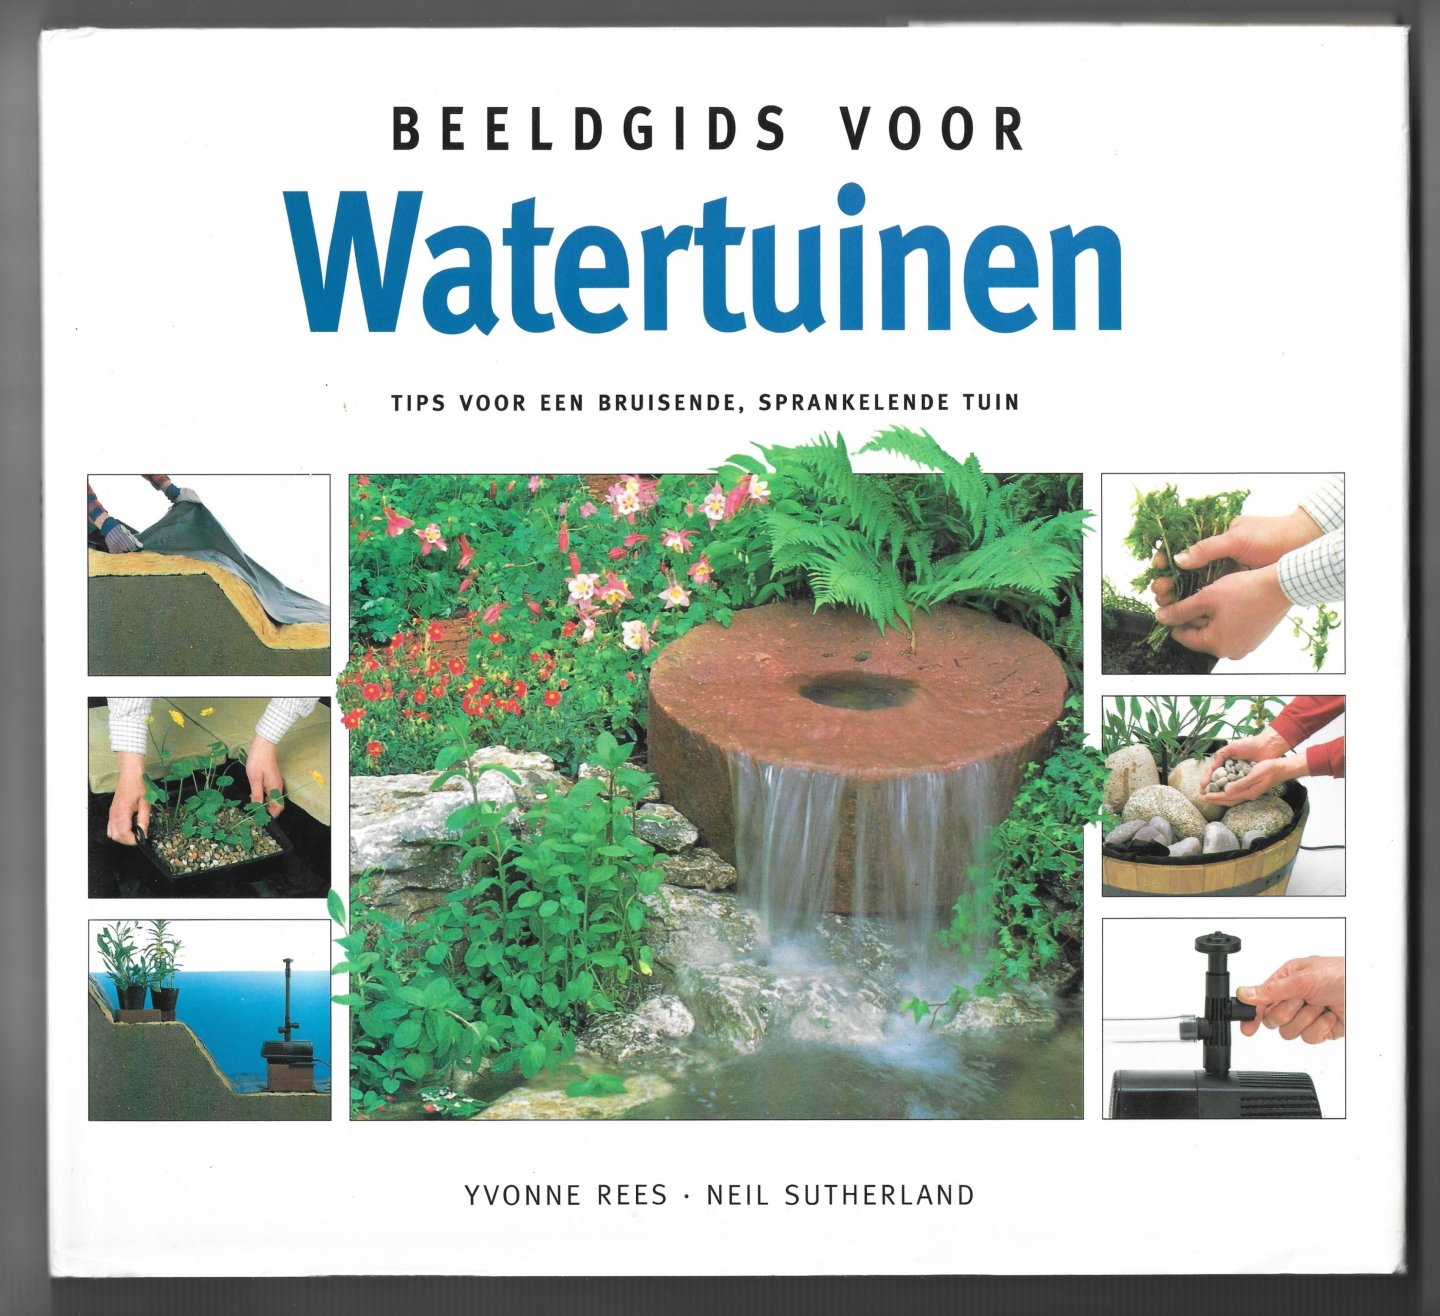 Rees, Yvonne / Sutherland, Neil - Beeldgids voor watertuinen / Tips voor een bruisende, sprankelijke tuin